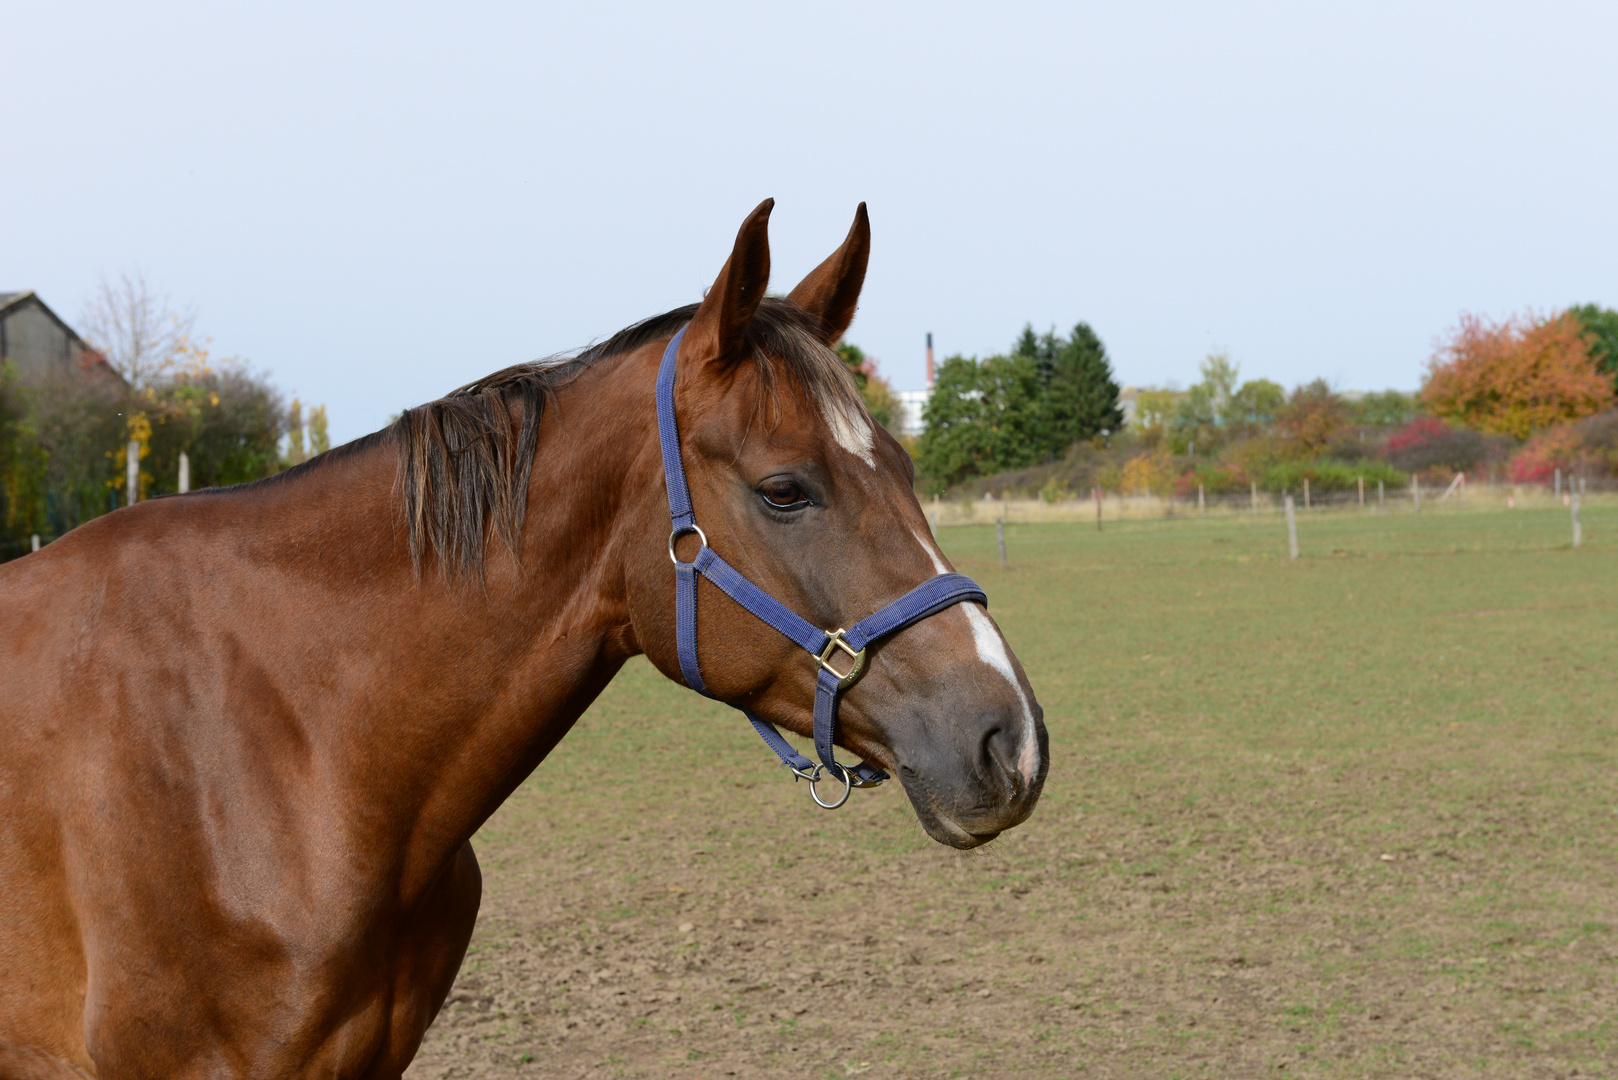 Portrait eines Pferdes... oder freundschaftliches posen,- oder einfach nur schön?